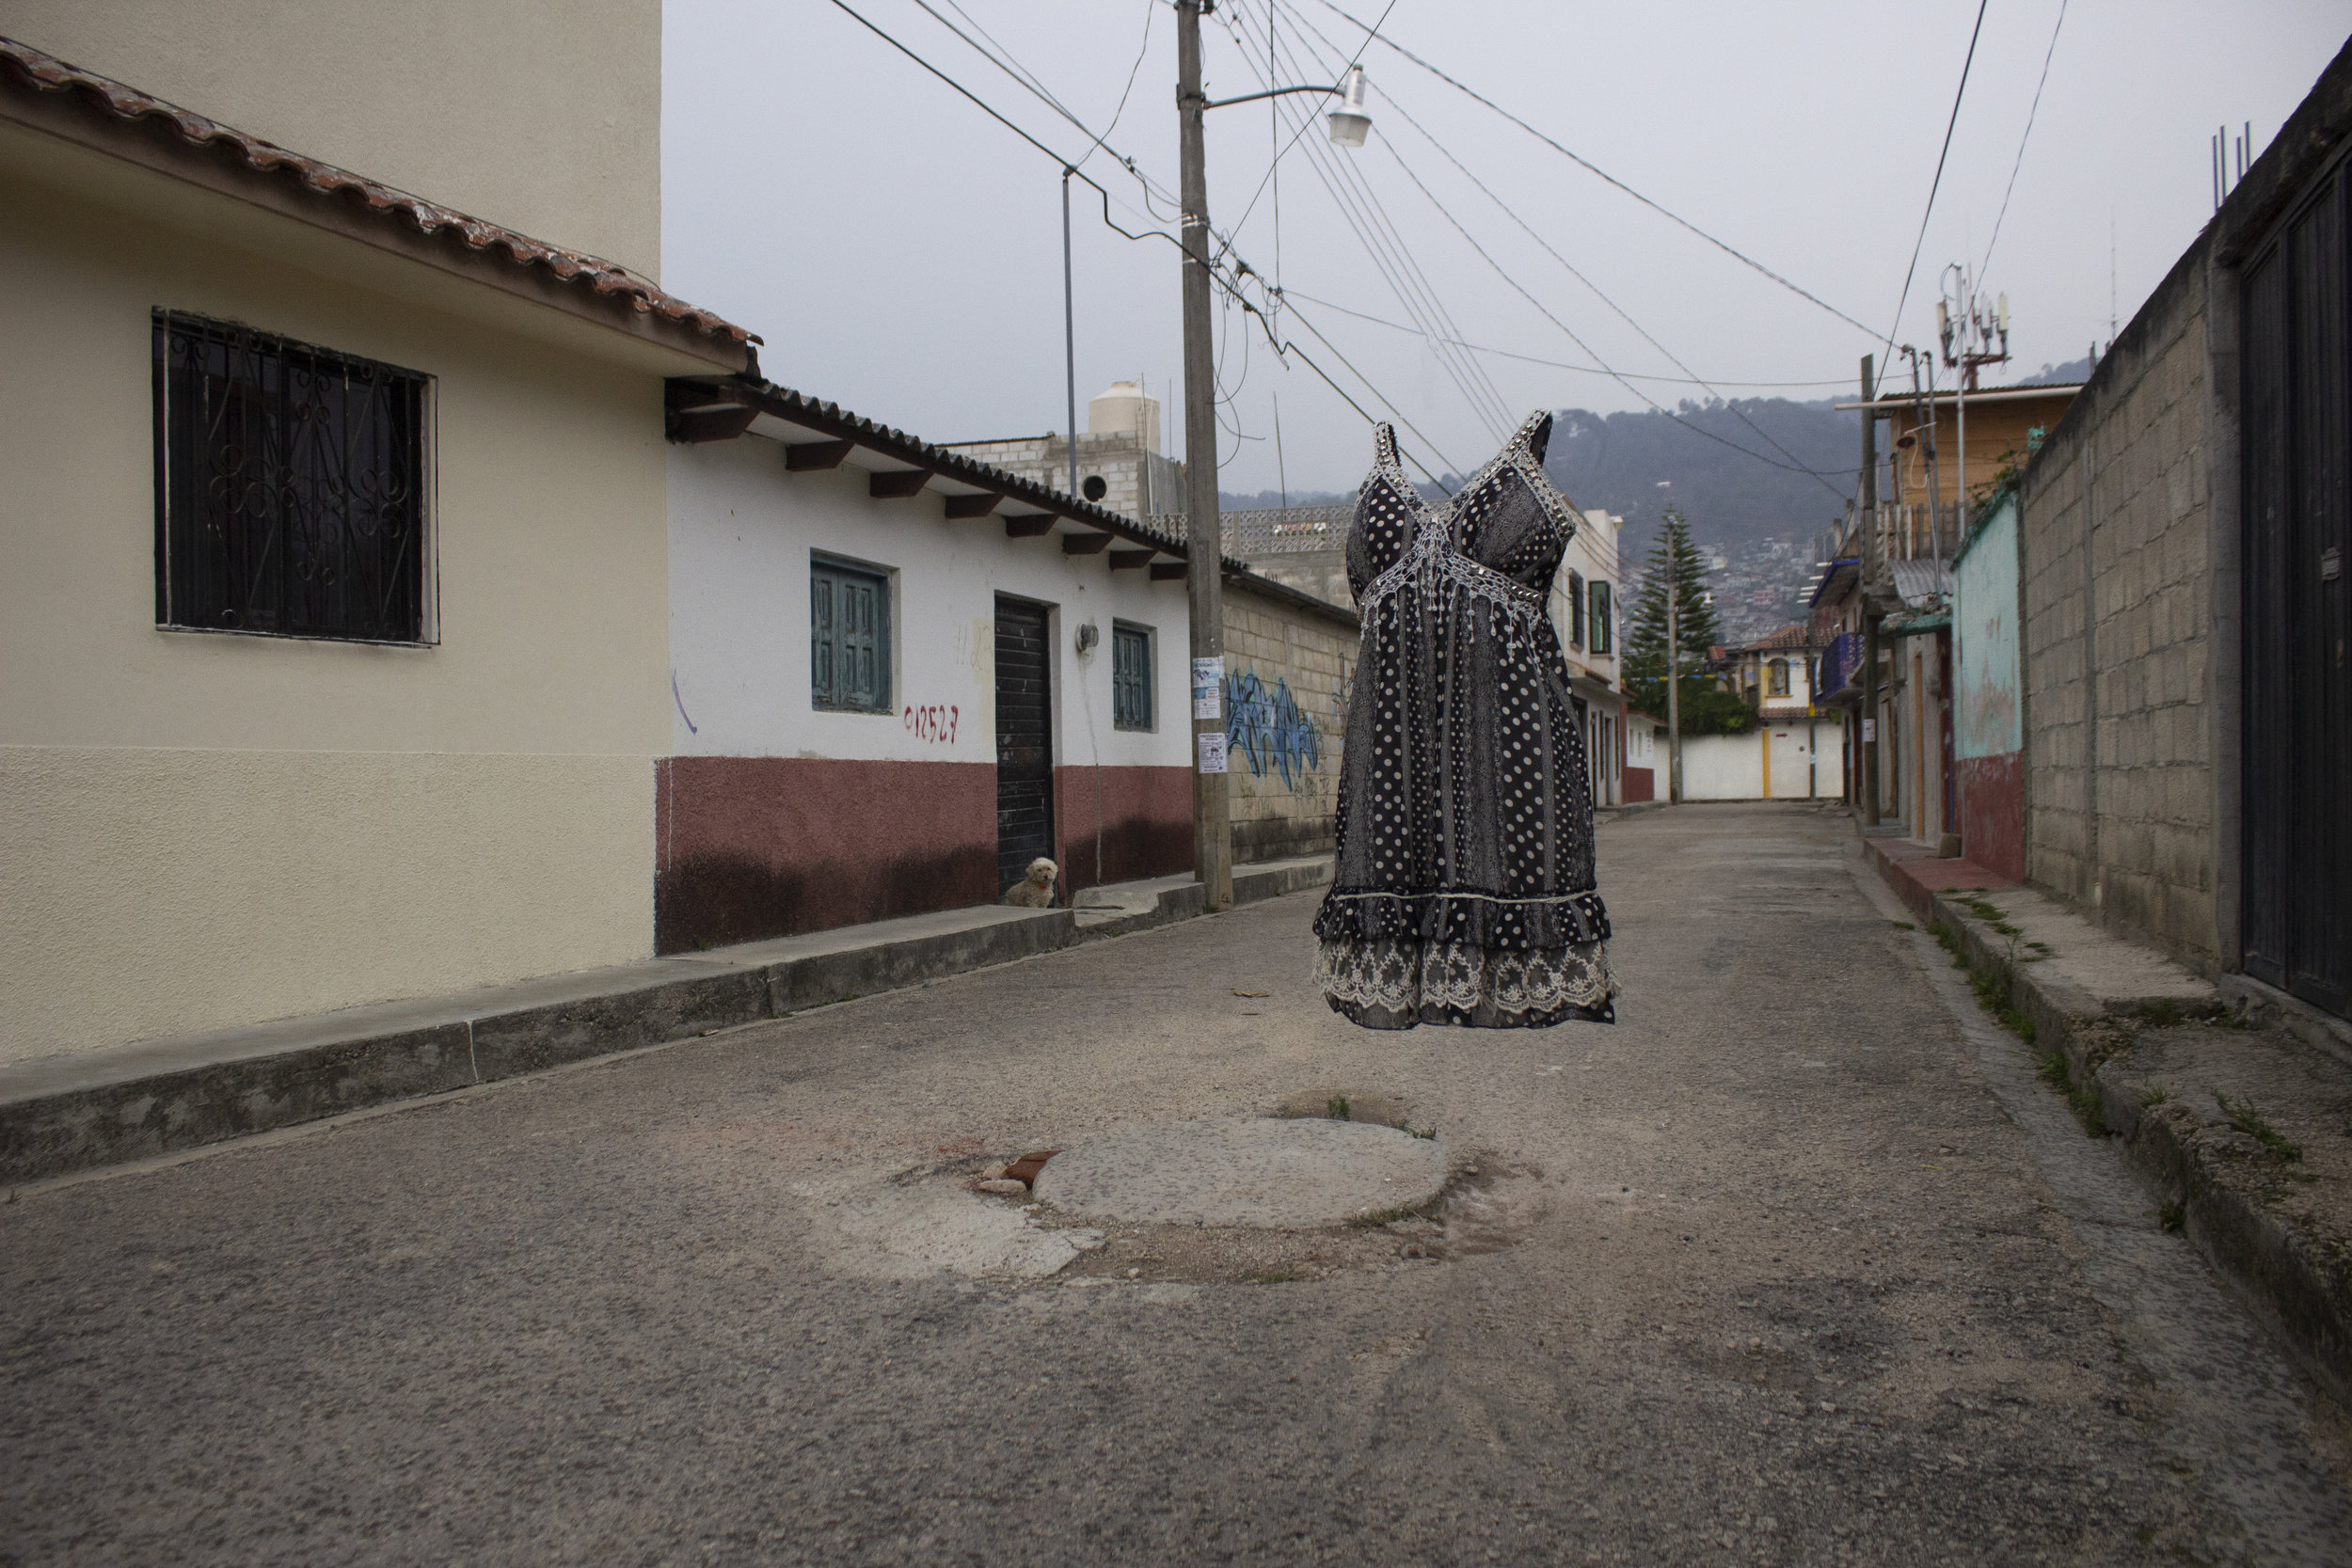  Vestido de Erika en las calles de San Cristóbal de Las Casas en dónde solía caminar cuando visitaba a su madre y hermana. 